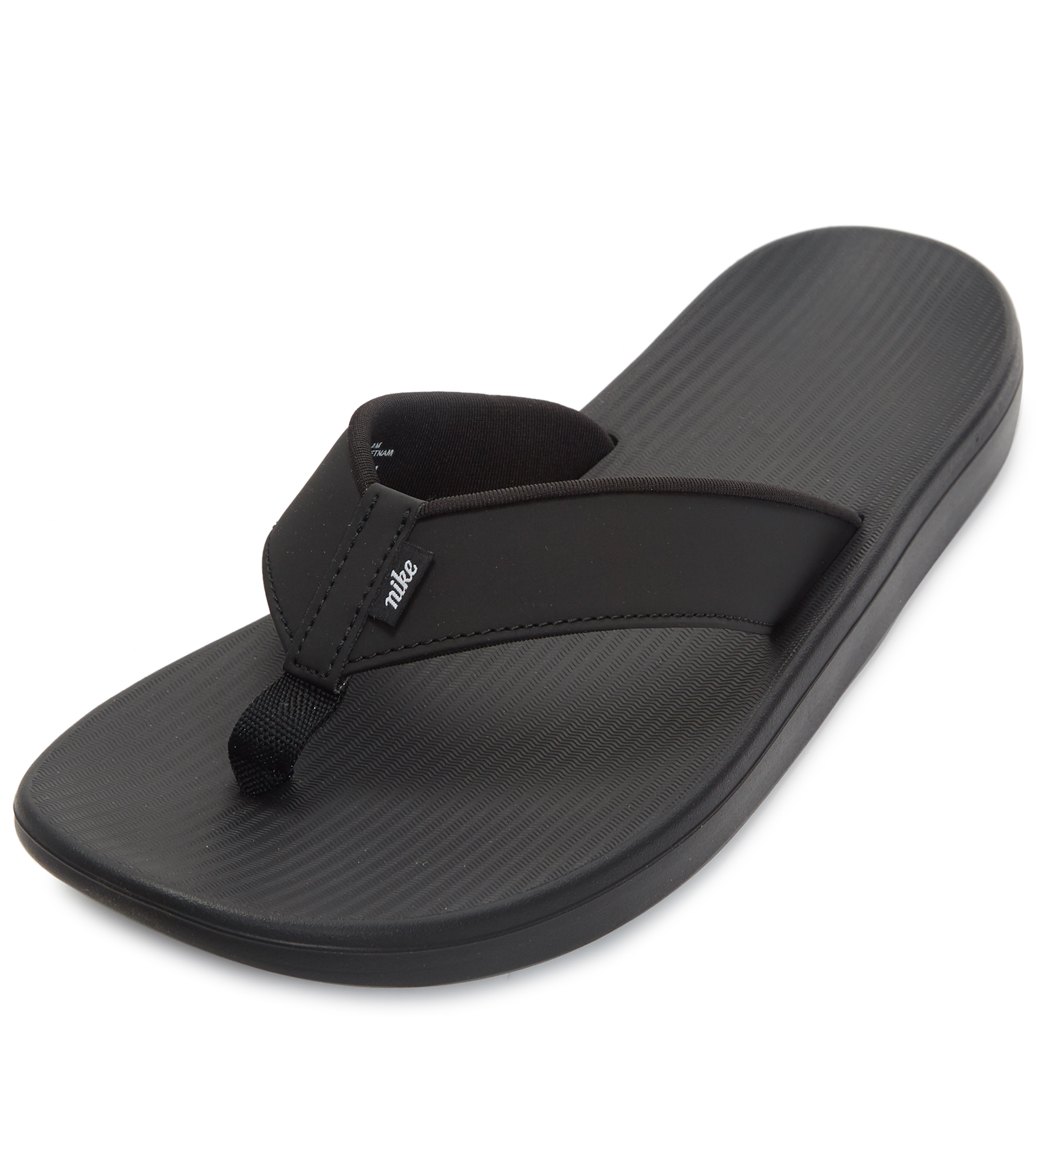 nike sandals waterproof